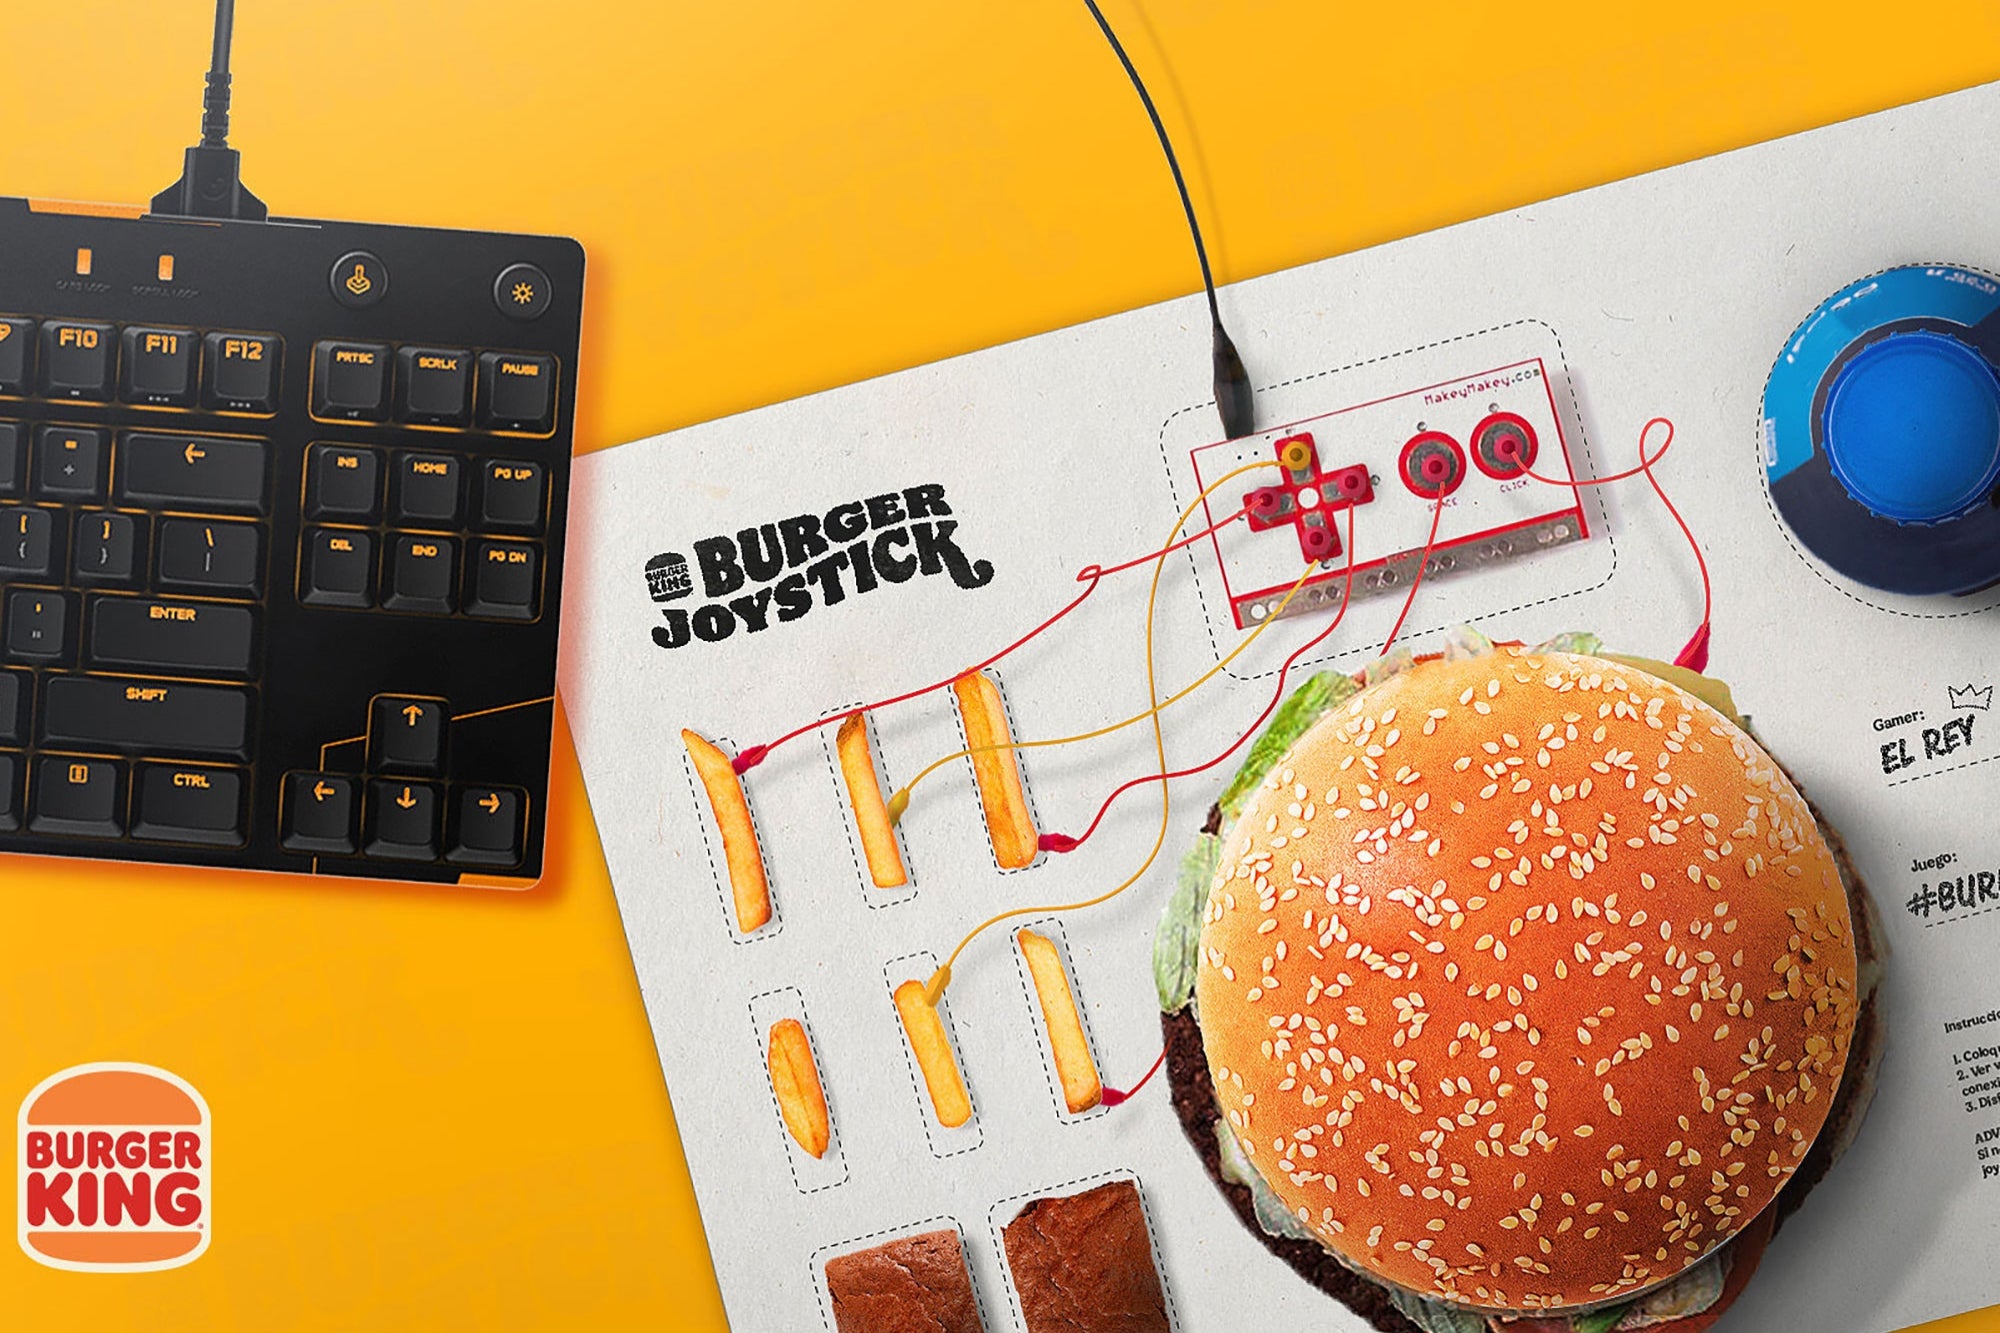 Burger King transforms a hamburger into a video game controller